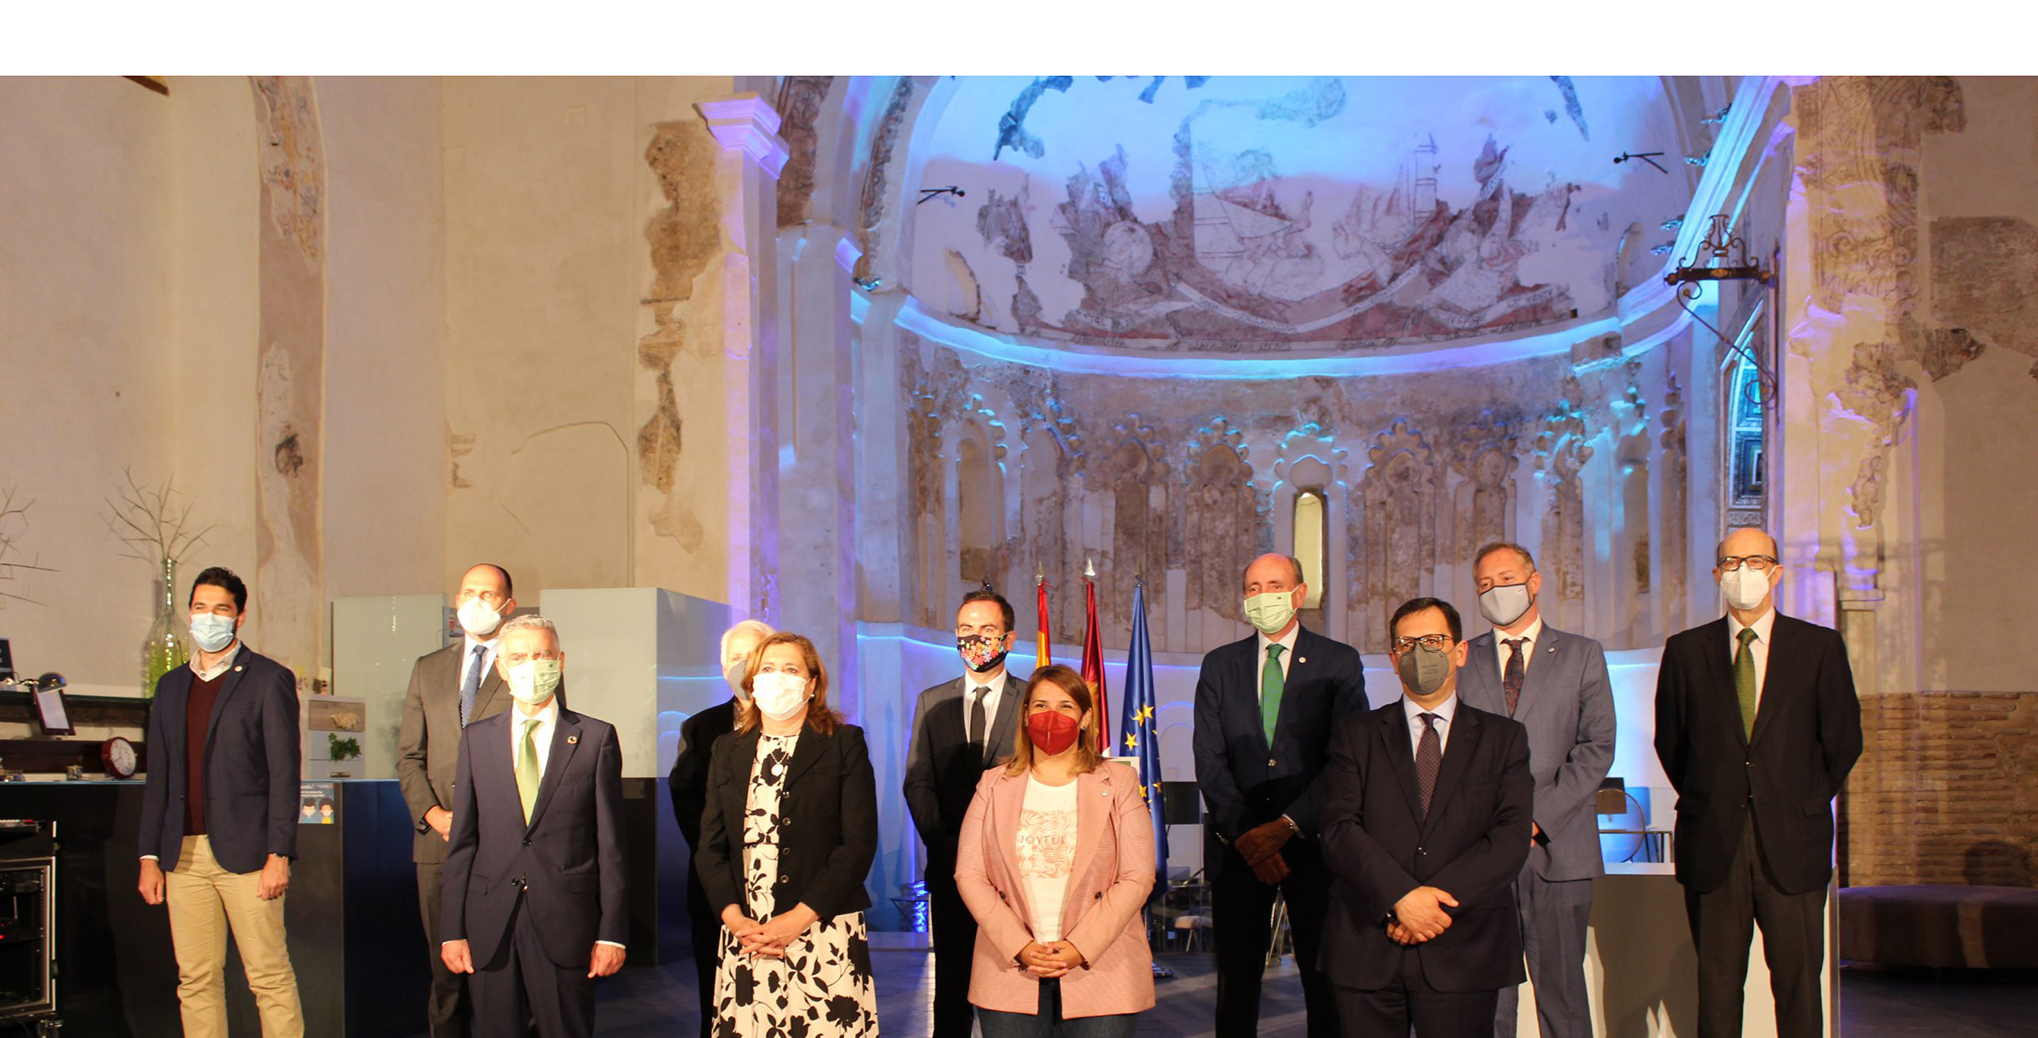 La Fundación Iberdrola España y el Ayuntamiento de Talavera de la Reina firman un convenio para iluminar el Puente Viejo